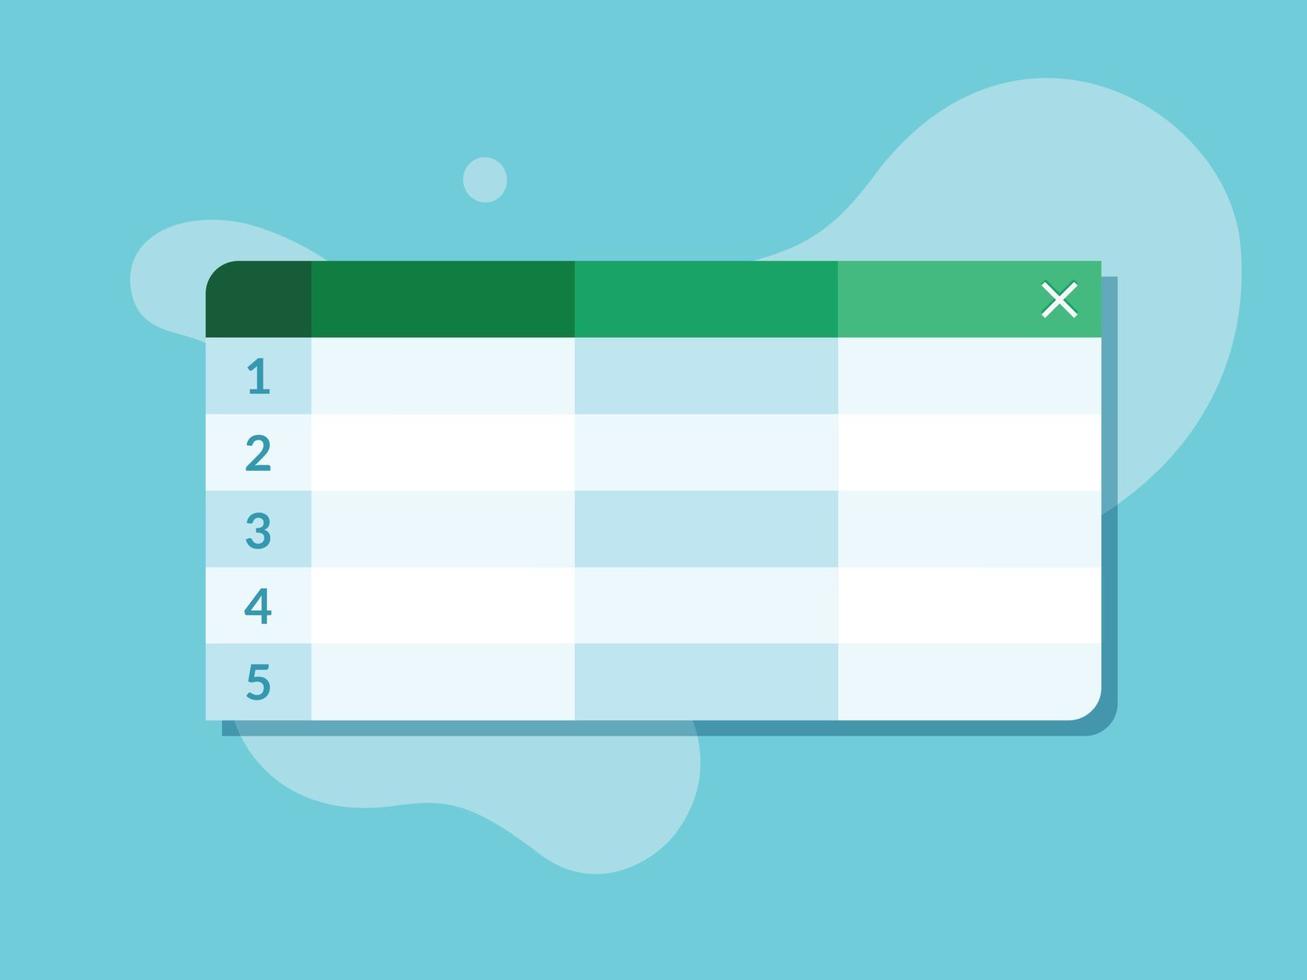 vetor de design plano de aplicativo de tabelas de planilha. conceito de software de planilha em ilustração de cores verde e azul, pode ser usado em animação, banners e apresentações.